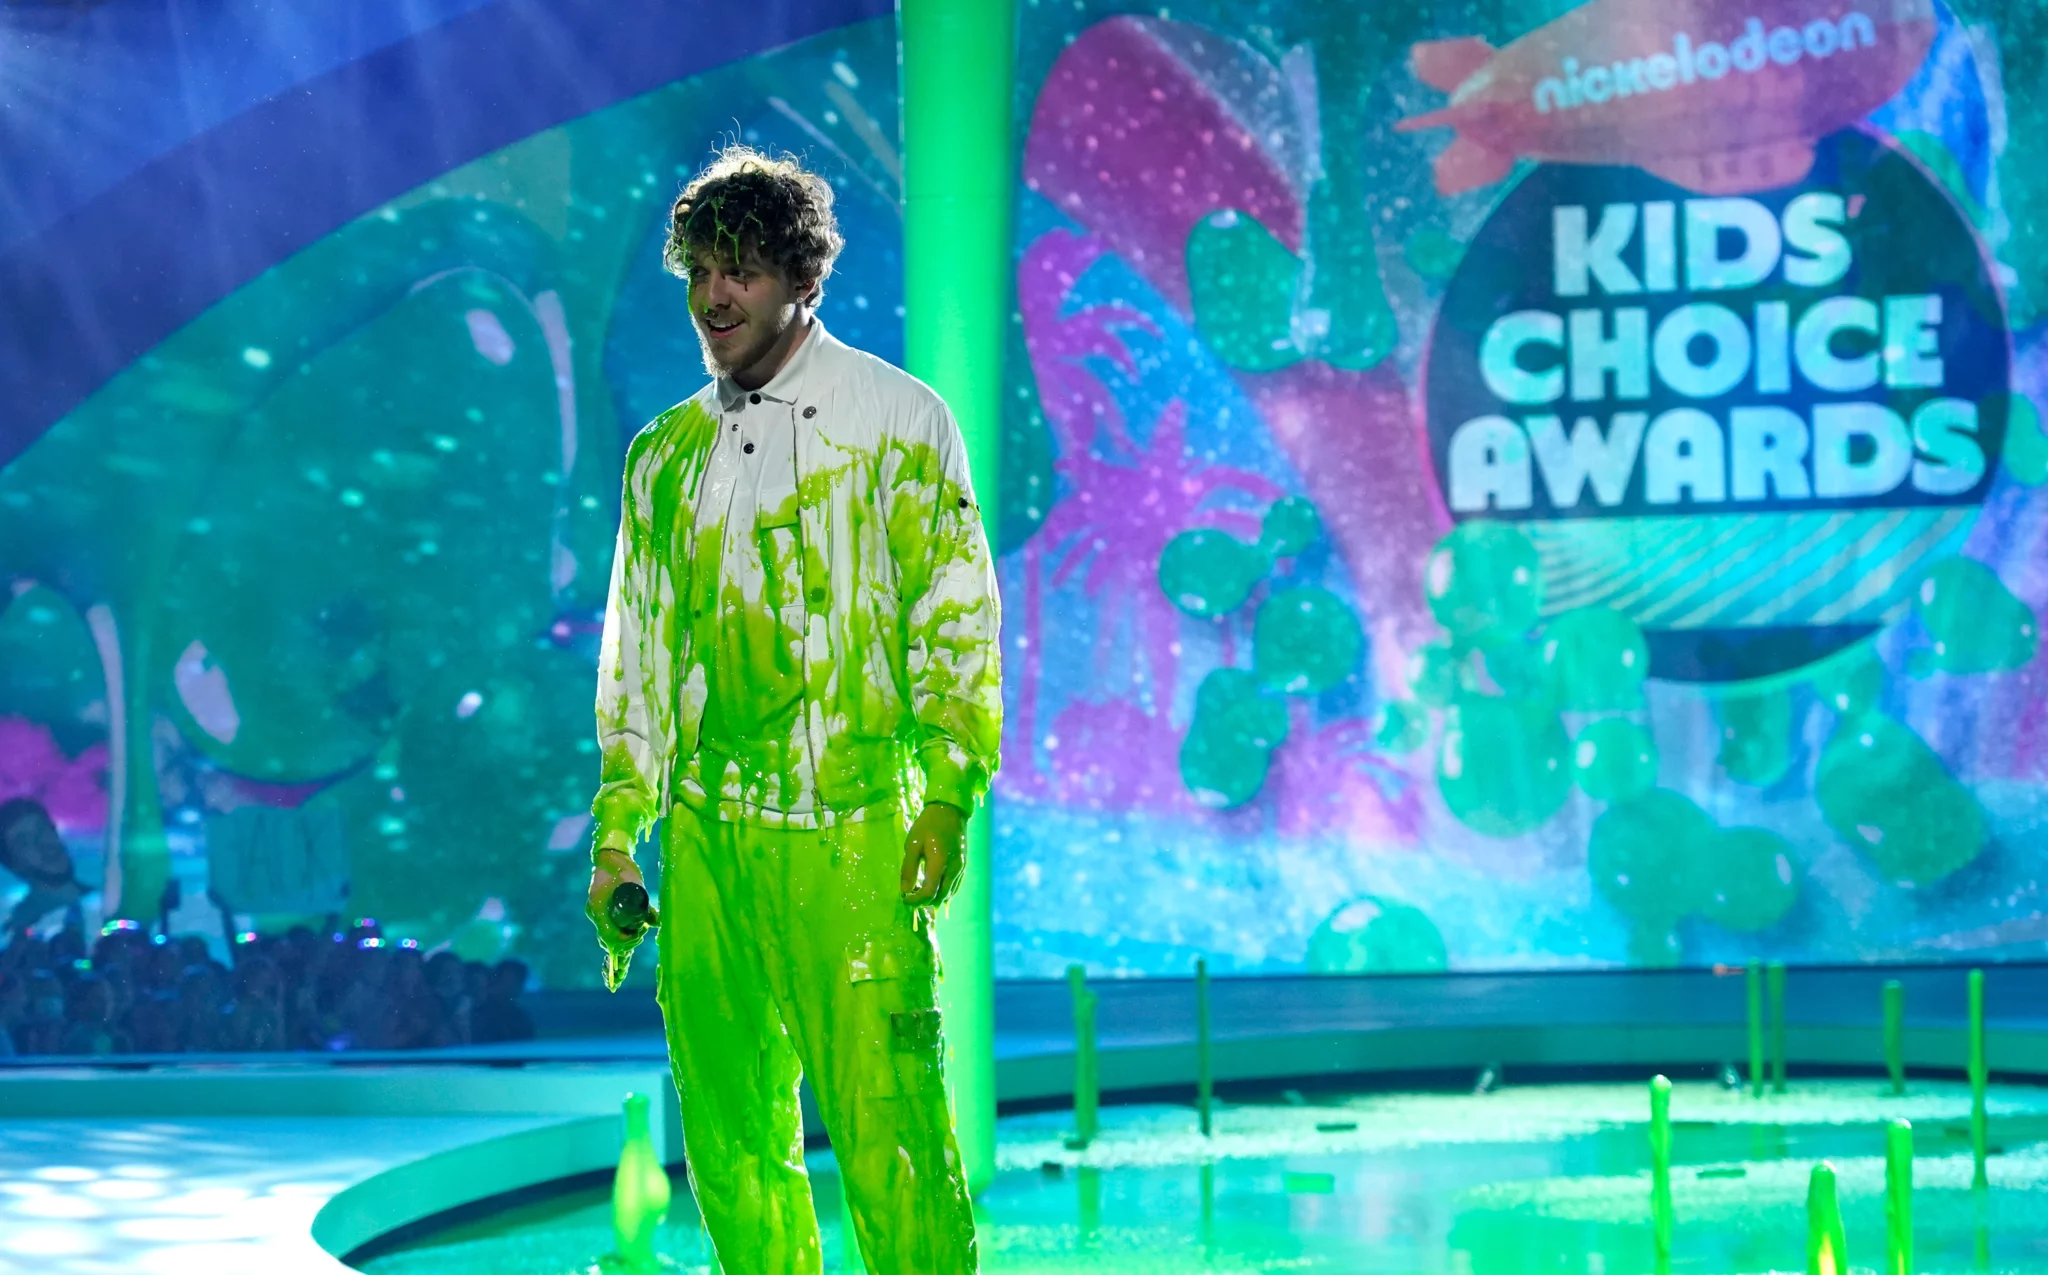 Jack Harlow at the Nickelodeon Kids Choice Awards. 